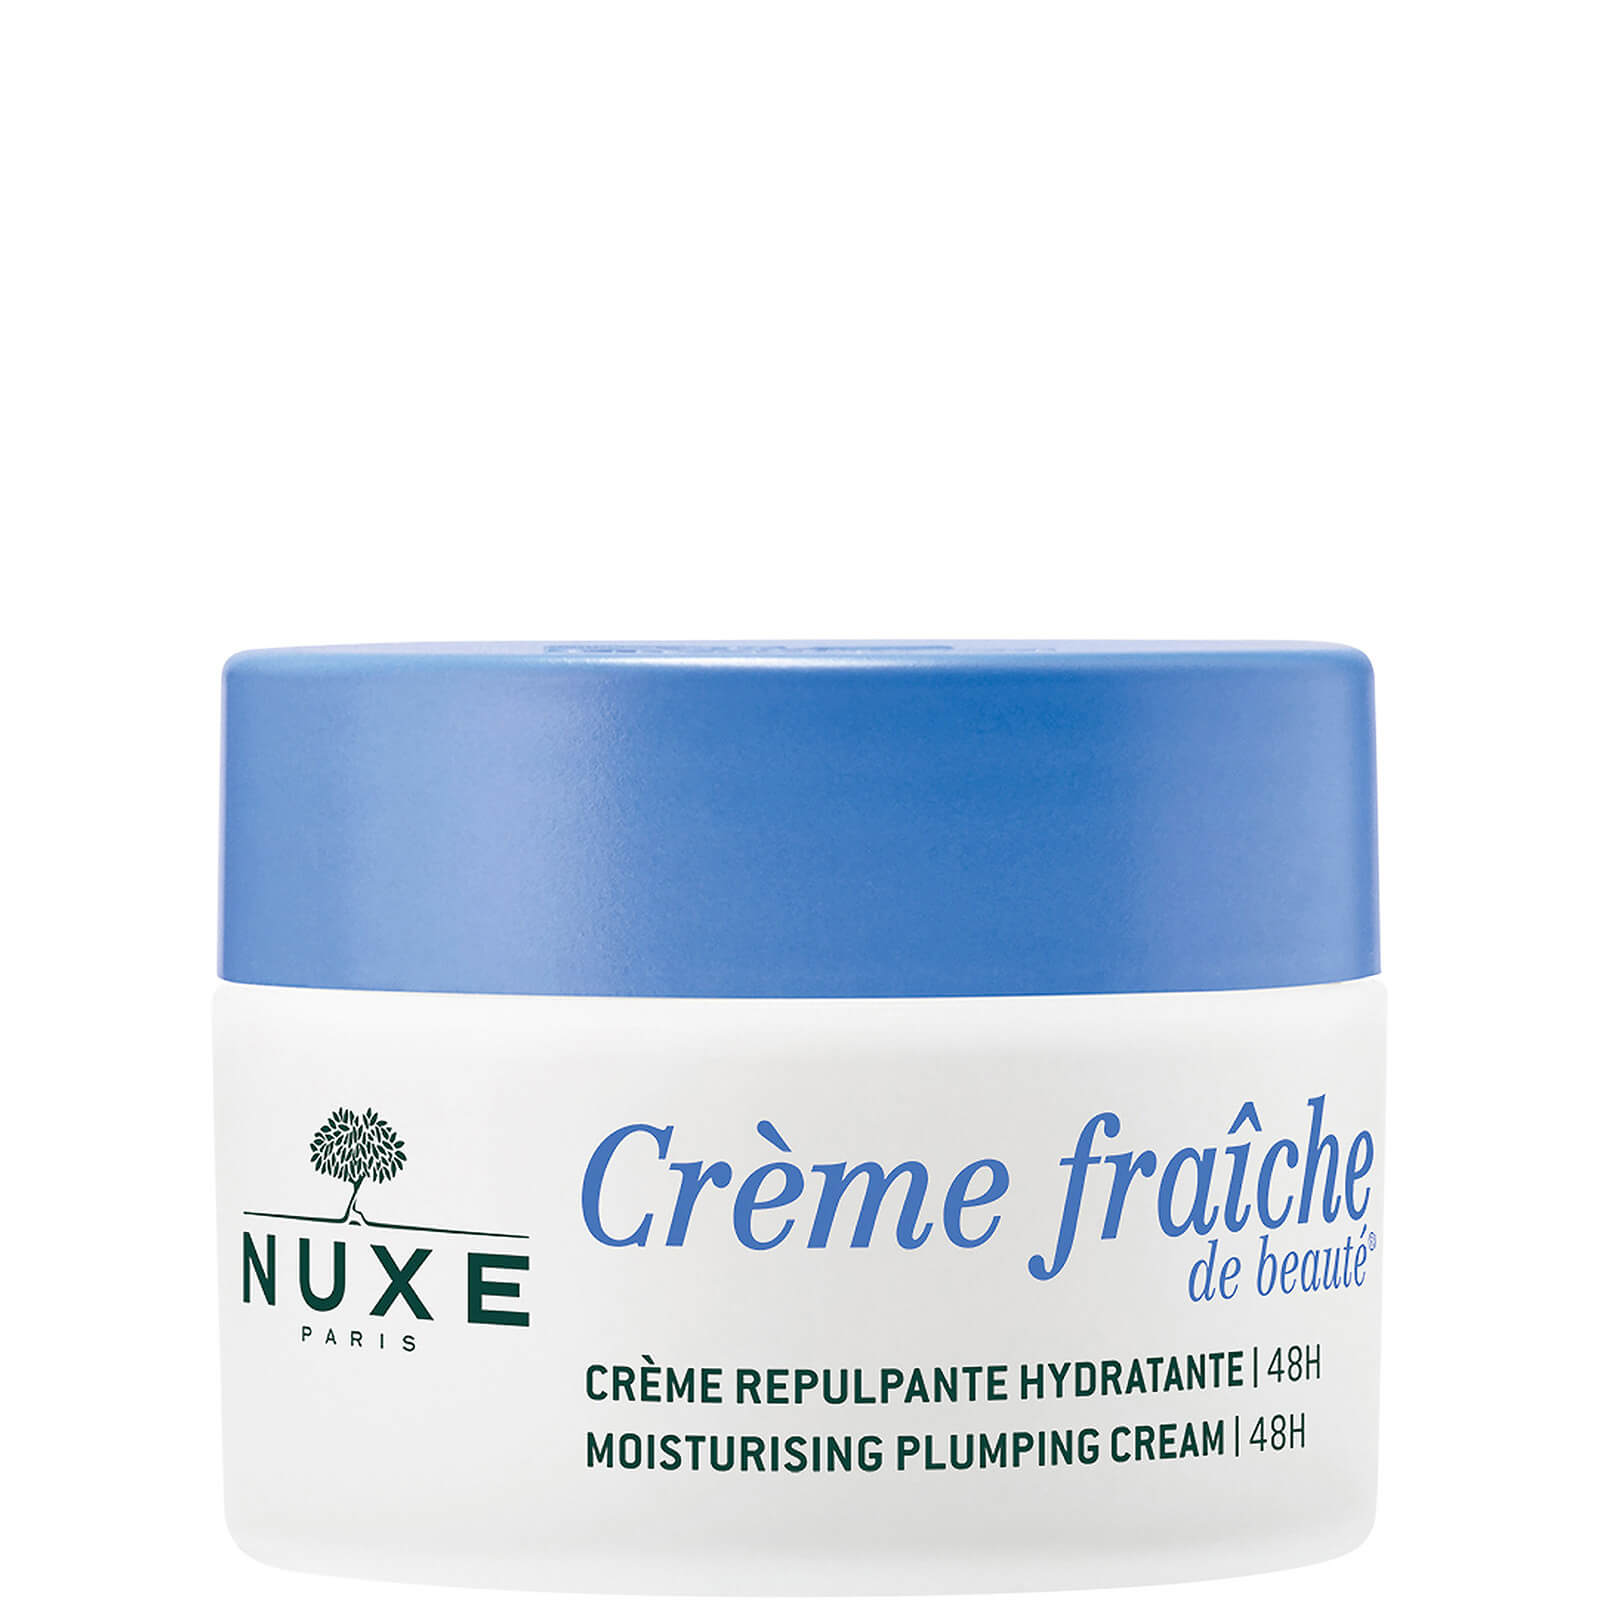 Nuxe Plumping Cream l 48h, Crème Fraîche de Beauté® 50ml